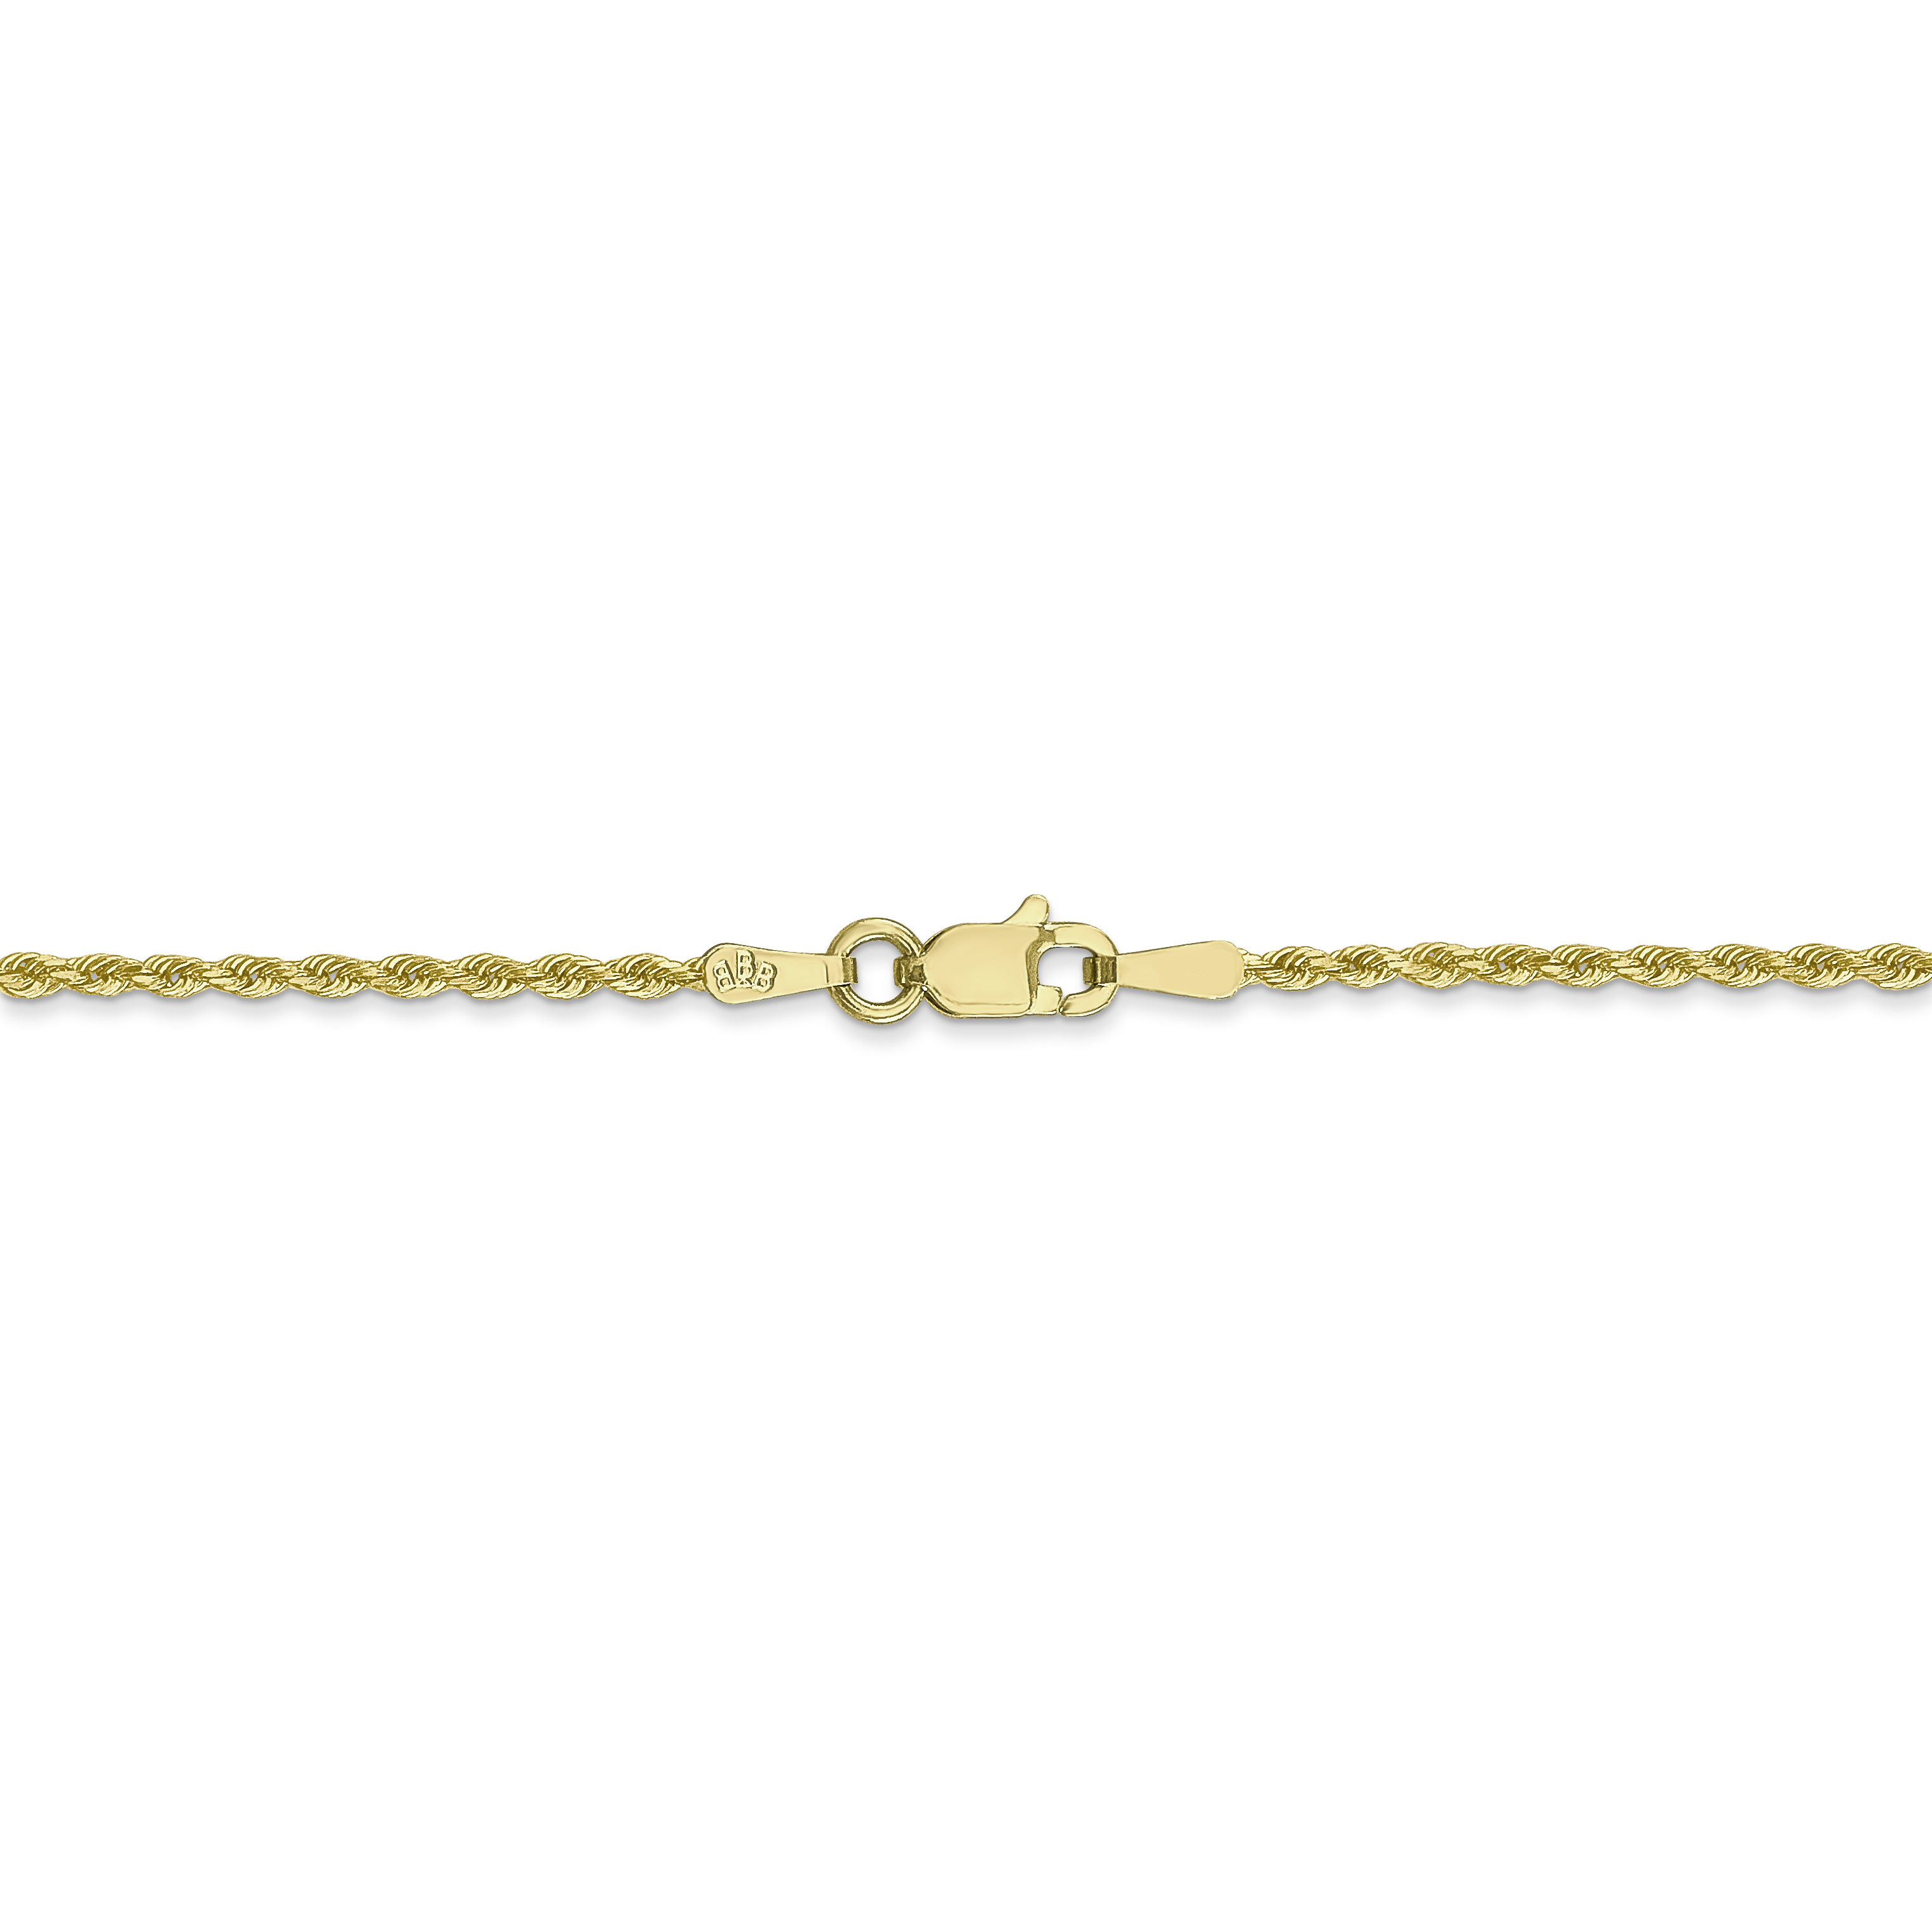 10K Yellow Gold 1.75mm Handmade Diamond Cut Rope Chain 30 Inch - image 4 of 6